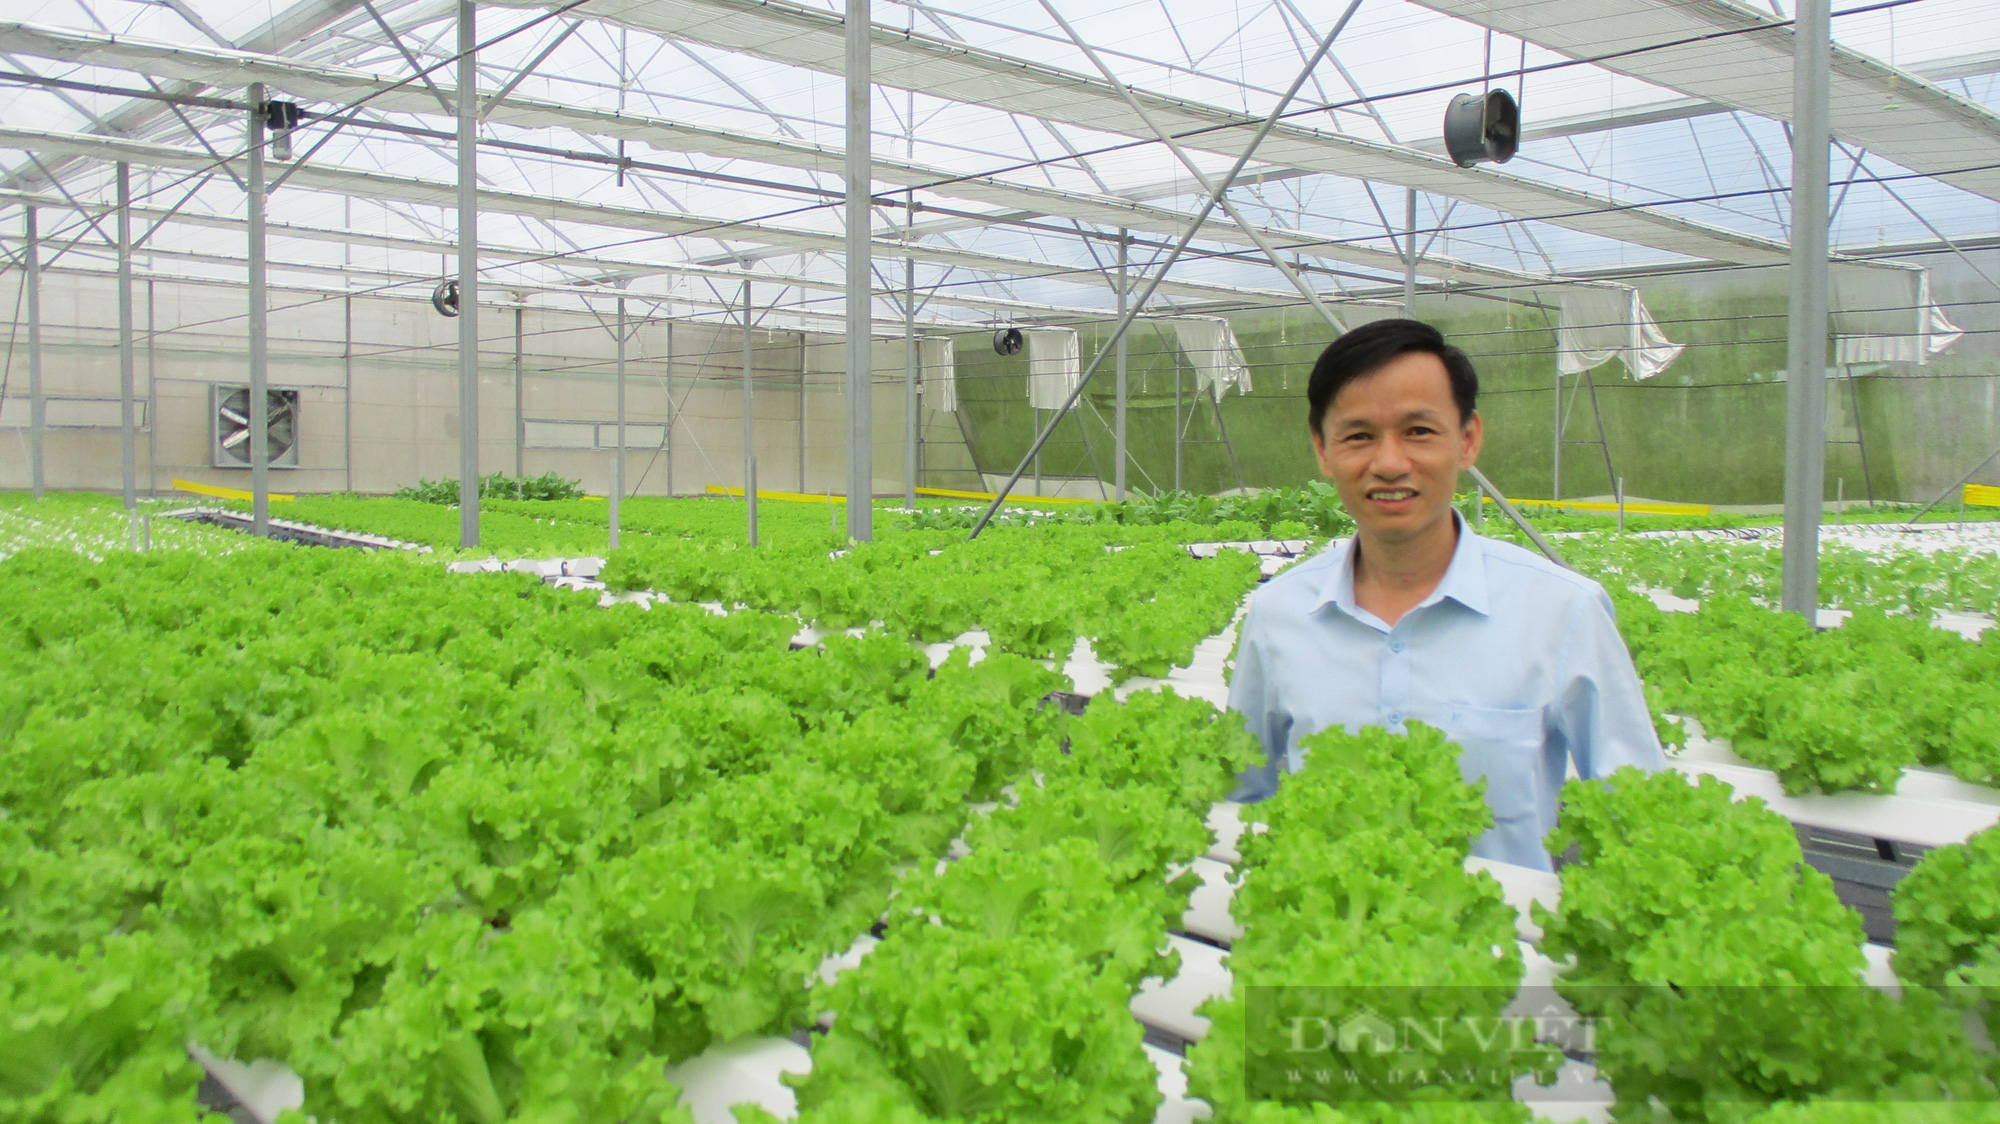 Đà Nẵng: Ứng dụng khoa học công nghệ vào phát triển nông nghiệp – hướng đến nền nông nghiệp đô thị bền vững - Ảnh 1.